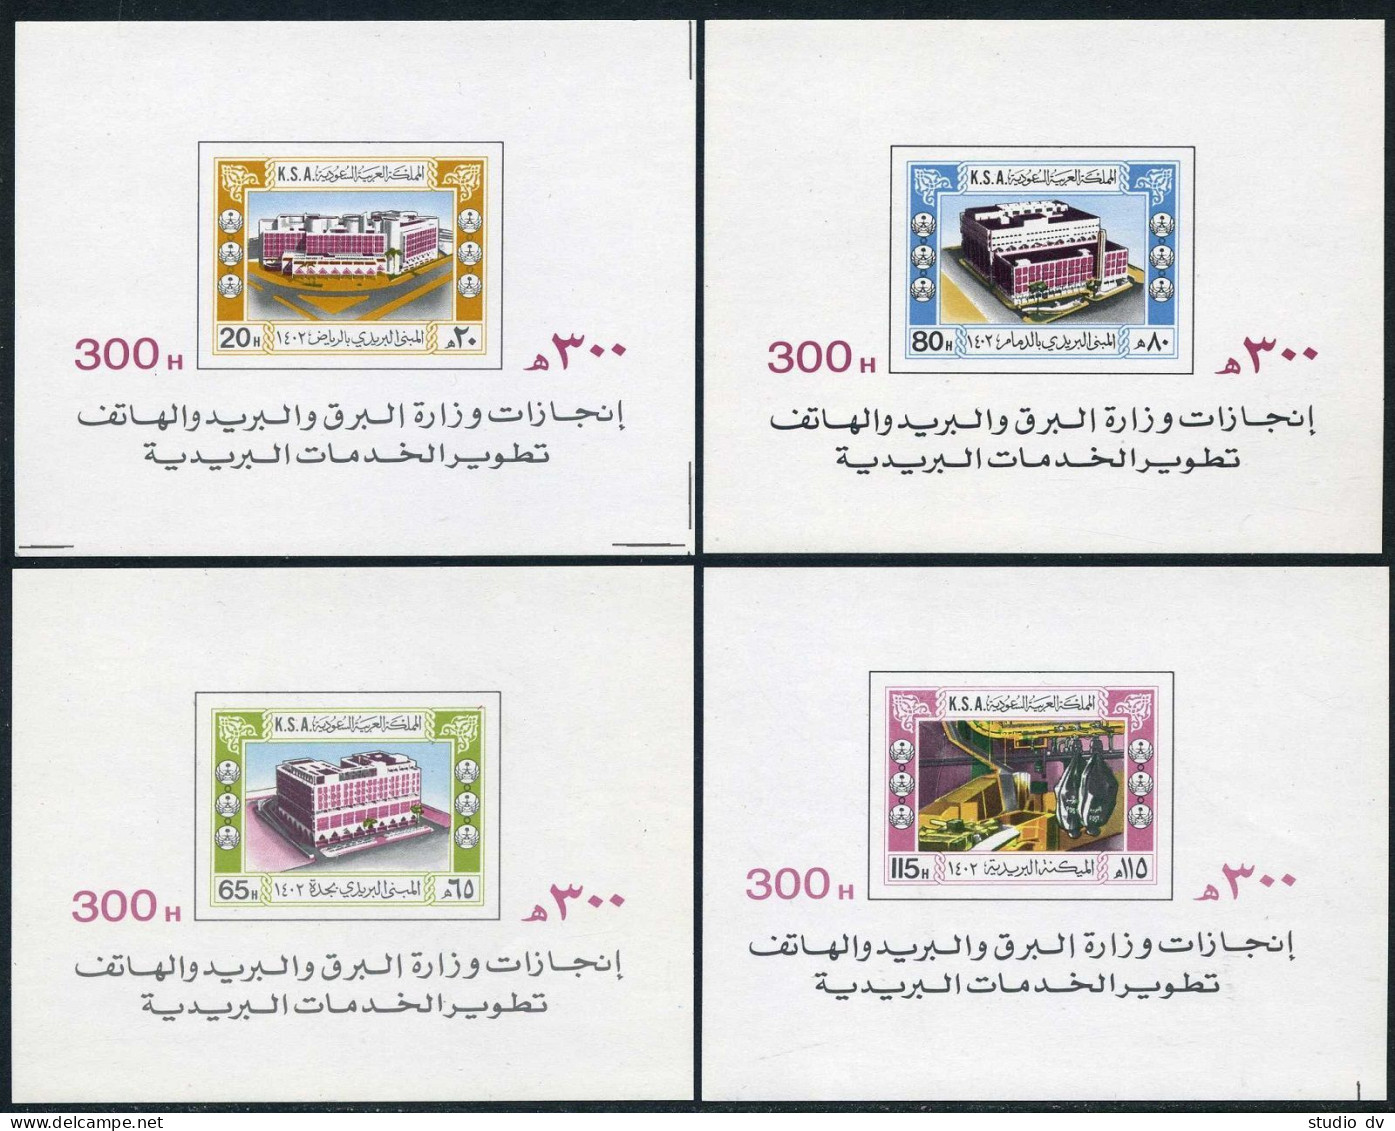 Saudi Arabia 841a-844a, MNH. Michel Bl.12-15. New Regional Postal Centers, 1982. - Saudi Arabia